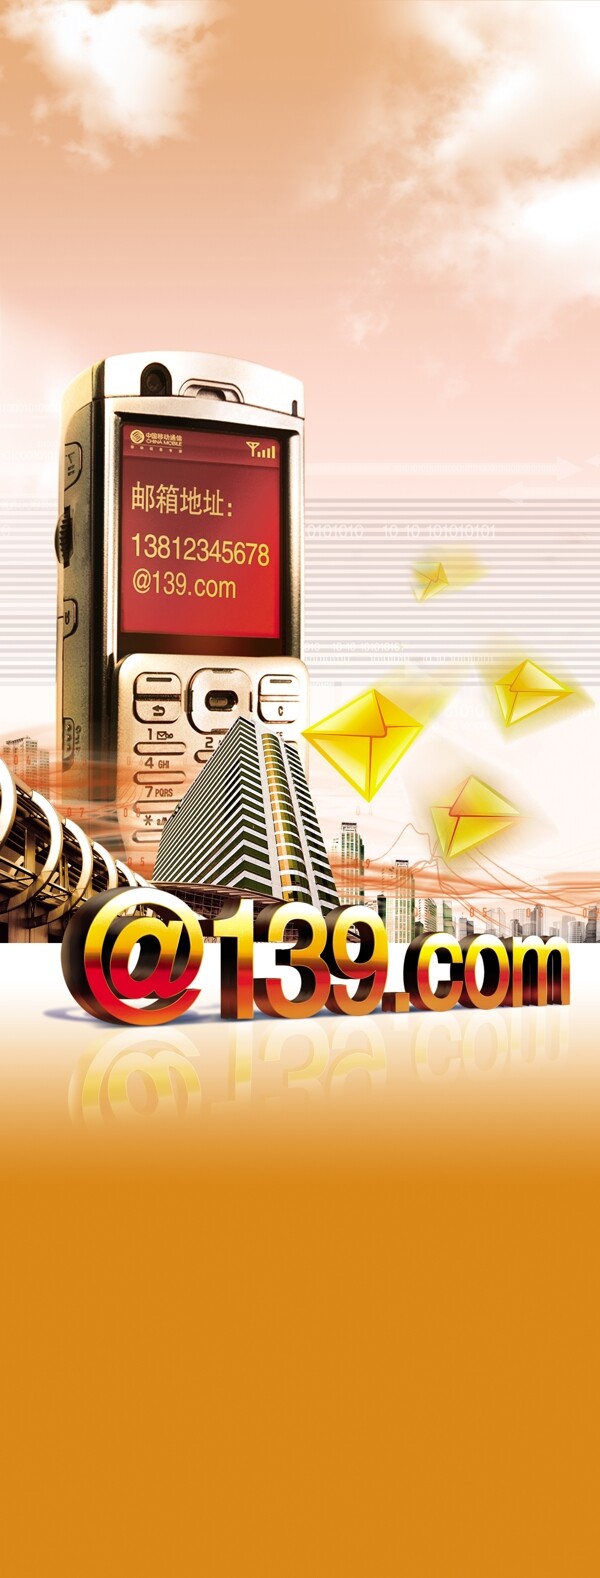 139邮箱x展架暖色调中国移动移动广告广告设计